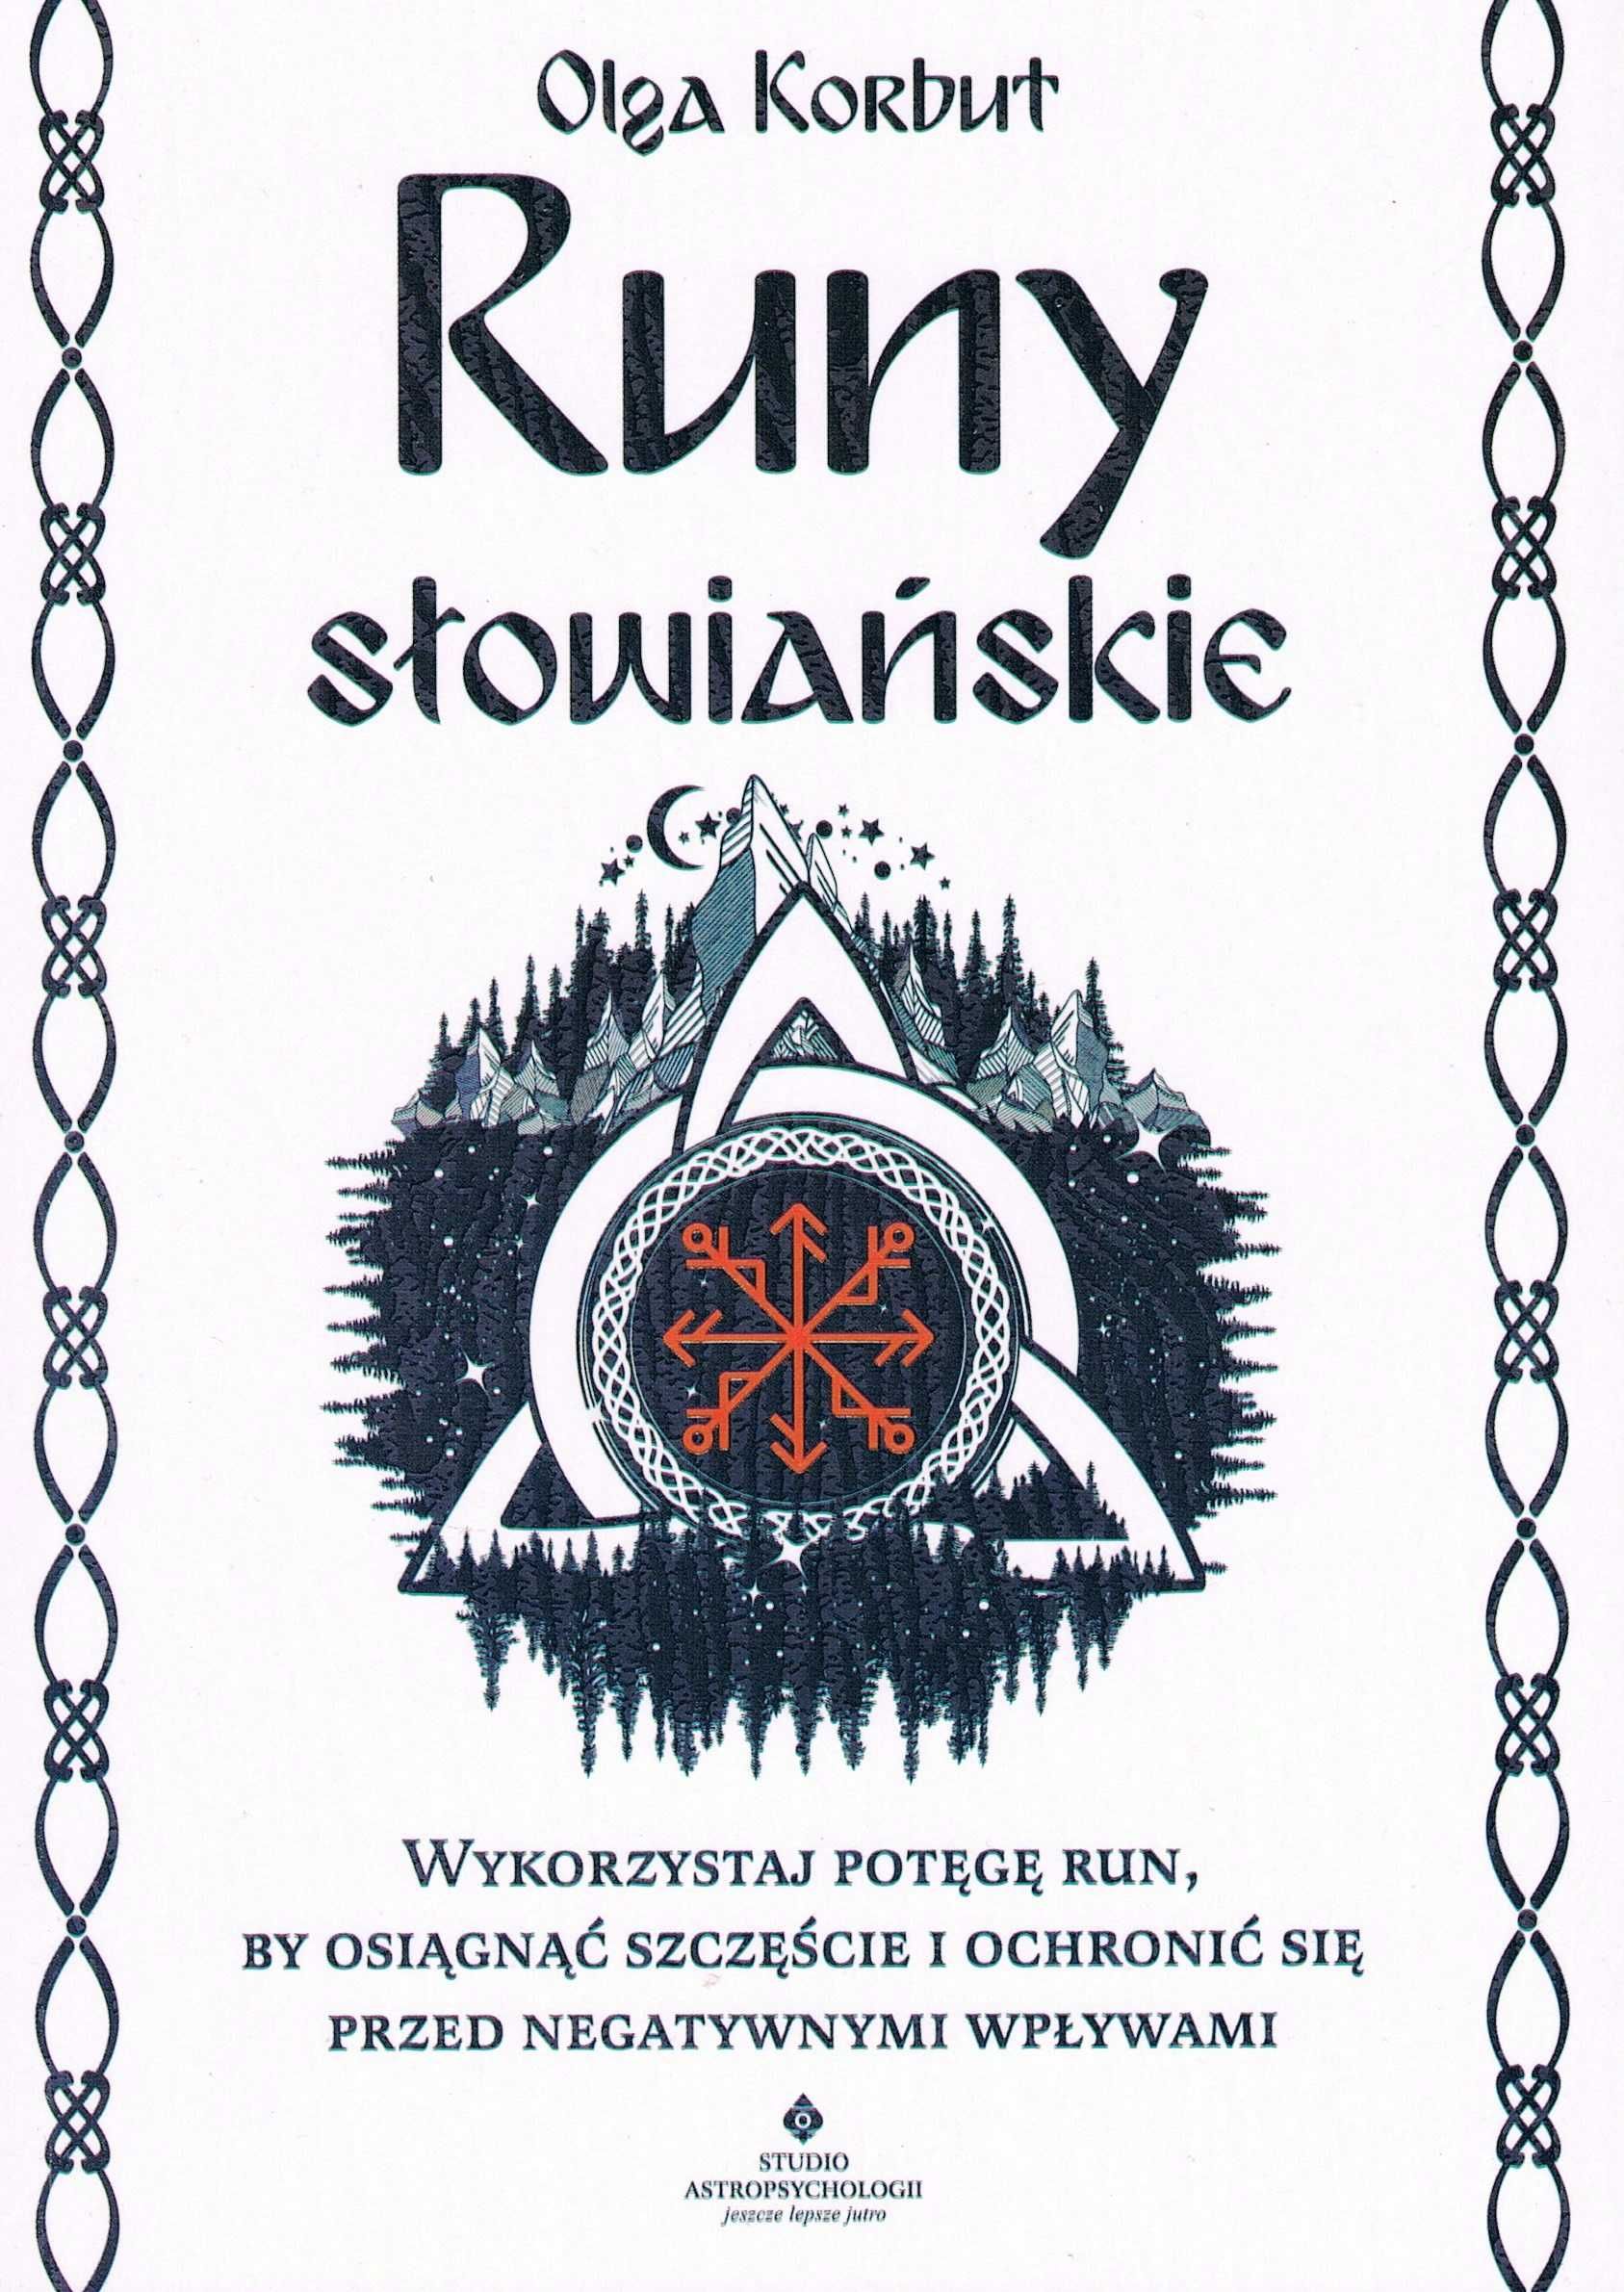 EZOTERYKA Runy słowiańskie (wyd. 2022)
Autor: Olga Korbut